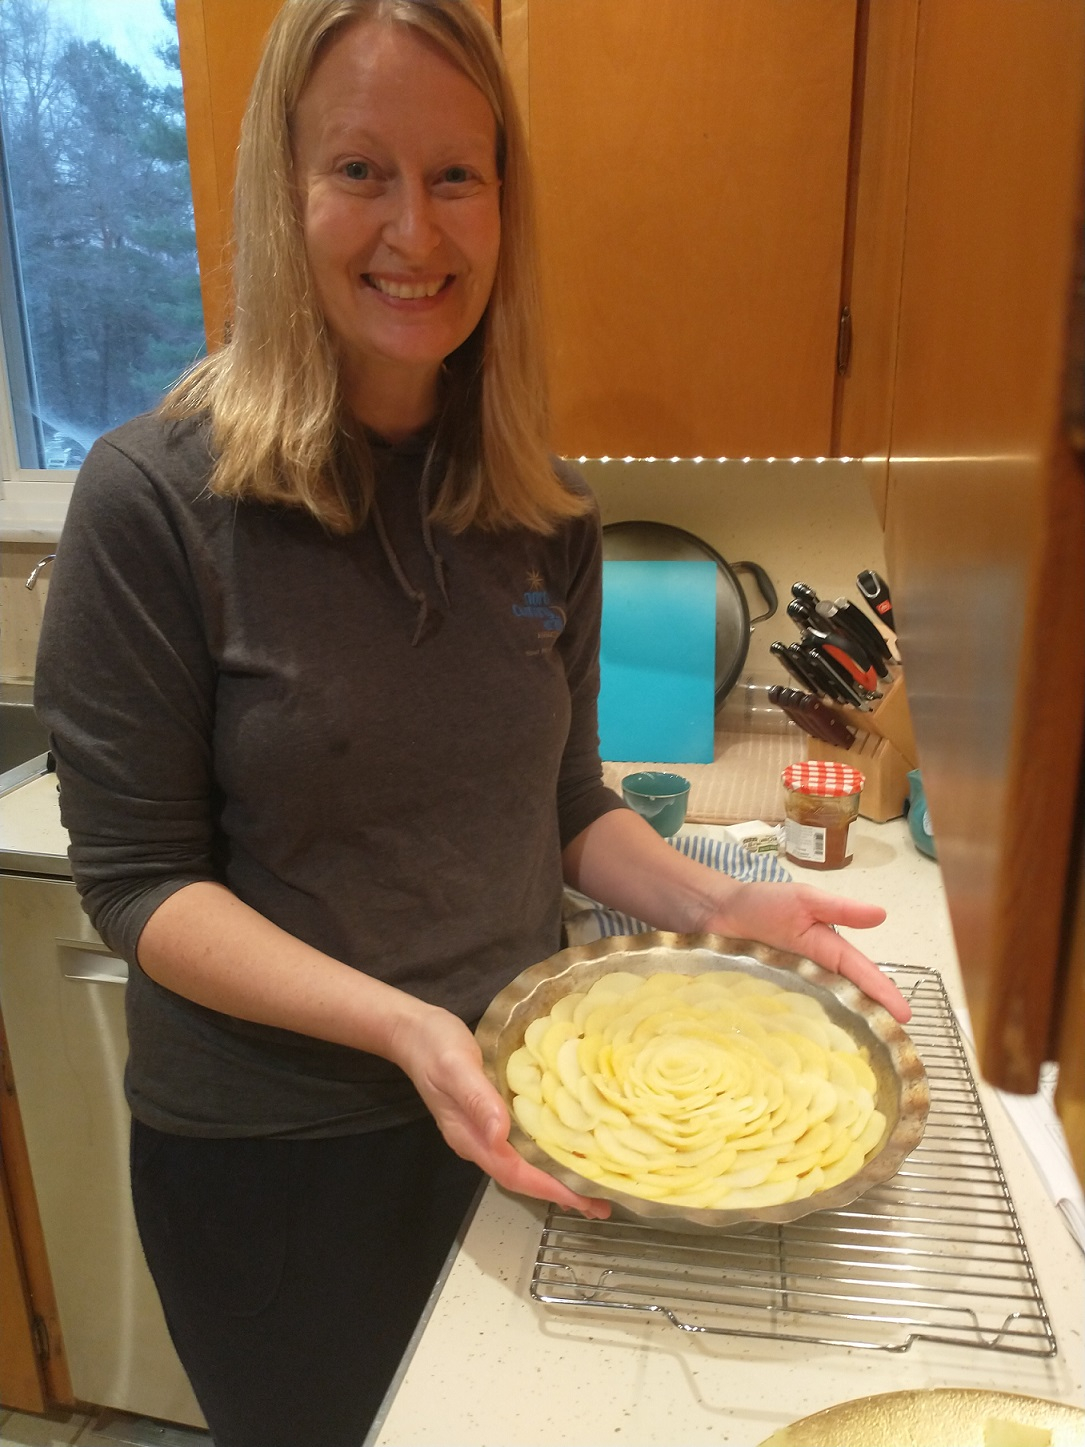  Karen Esmonde-White cooking in her kitchen